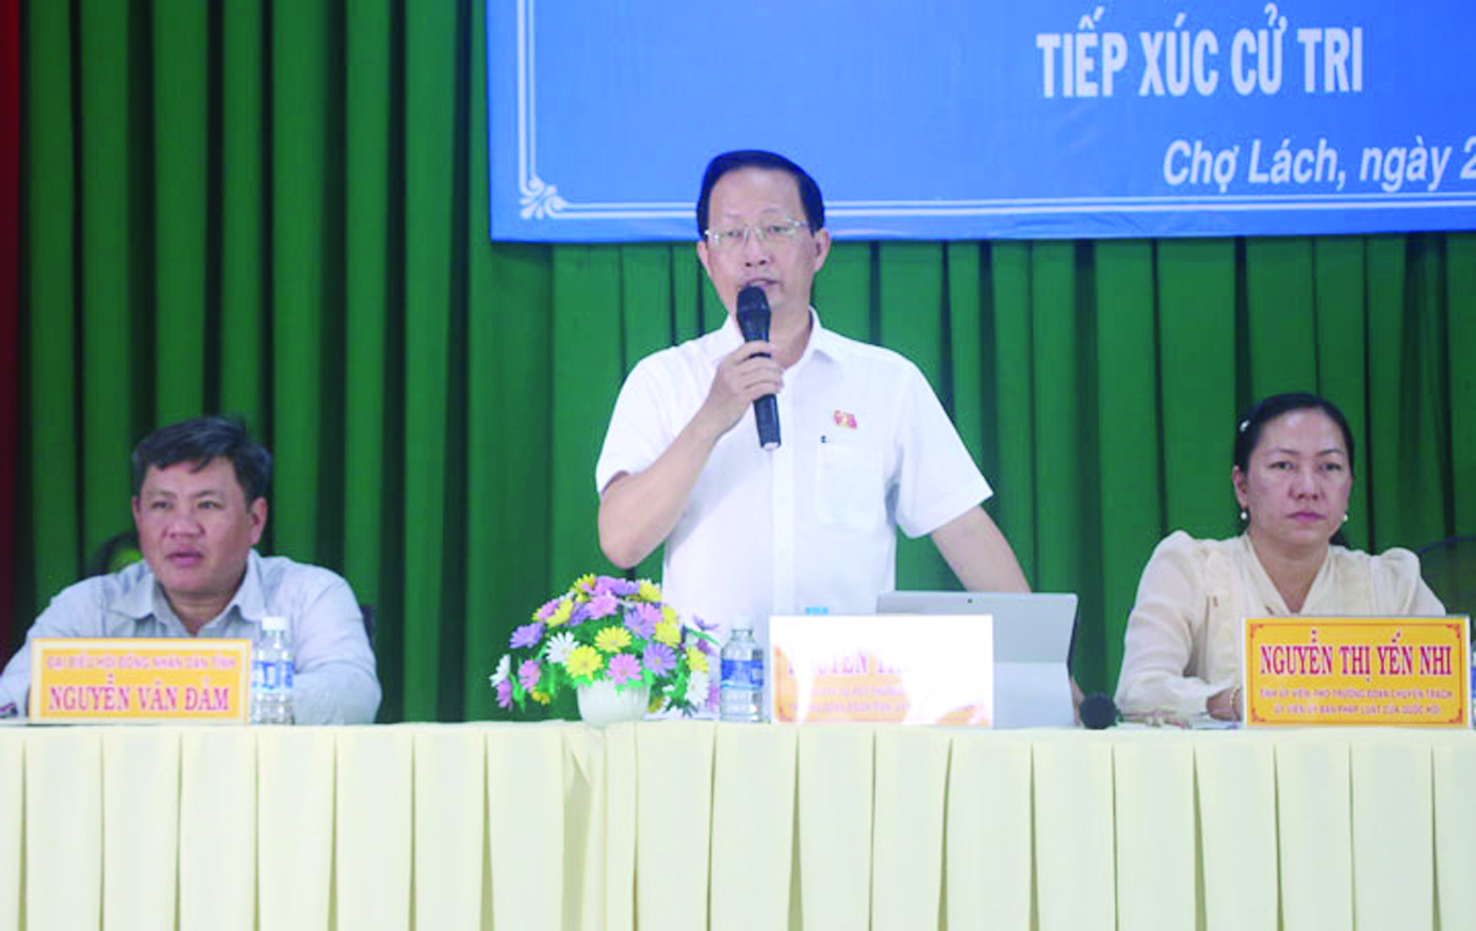  Ông Nguyễn Trúc Sơn - Phó Chủ tịch Thường trực UBND tỉnh, Trưởng đoàn đại biểu Quốc hội đơn vị tỉnh<p/>Bến Tre phát biểu tại buổi tiếp xúc với cử tri.